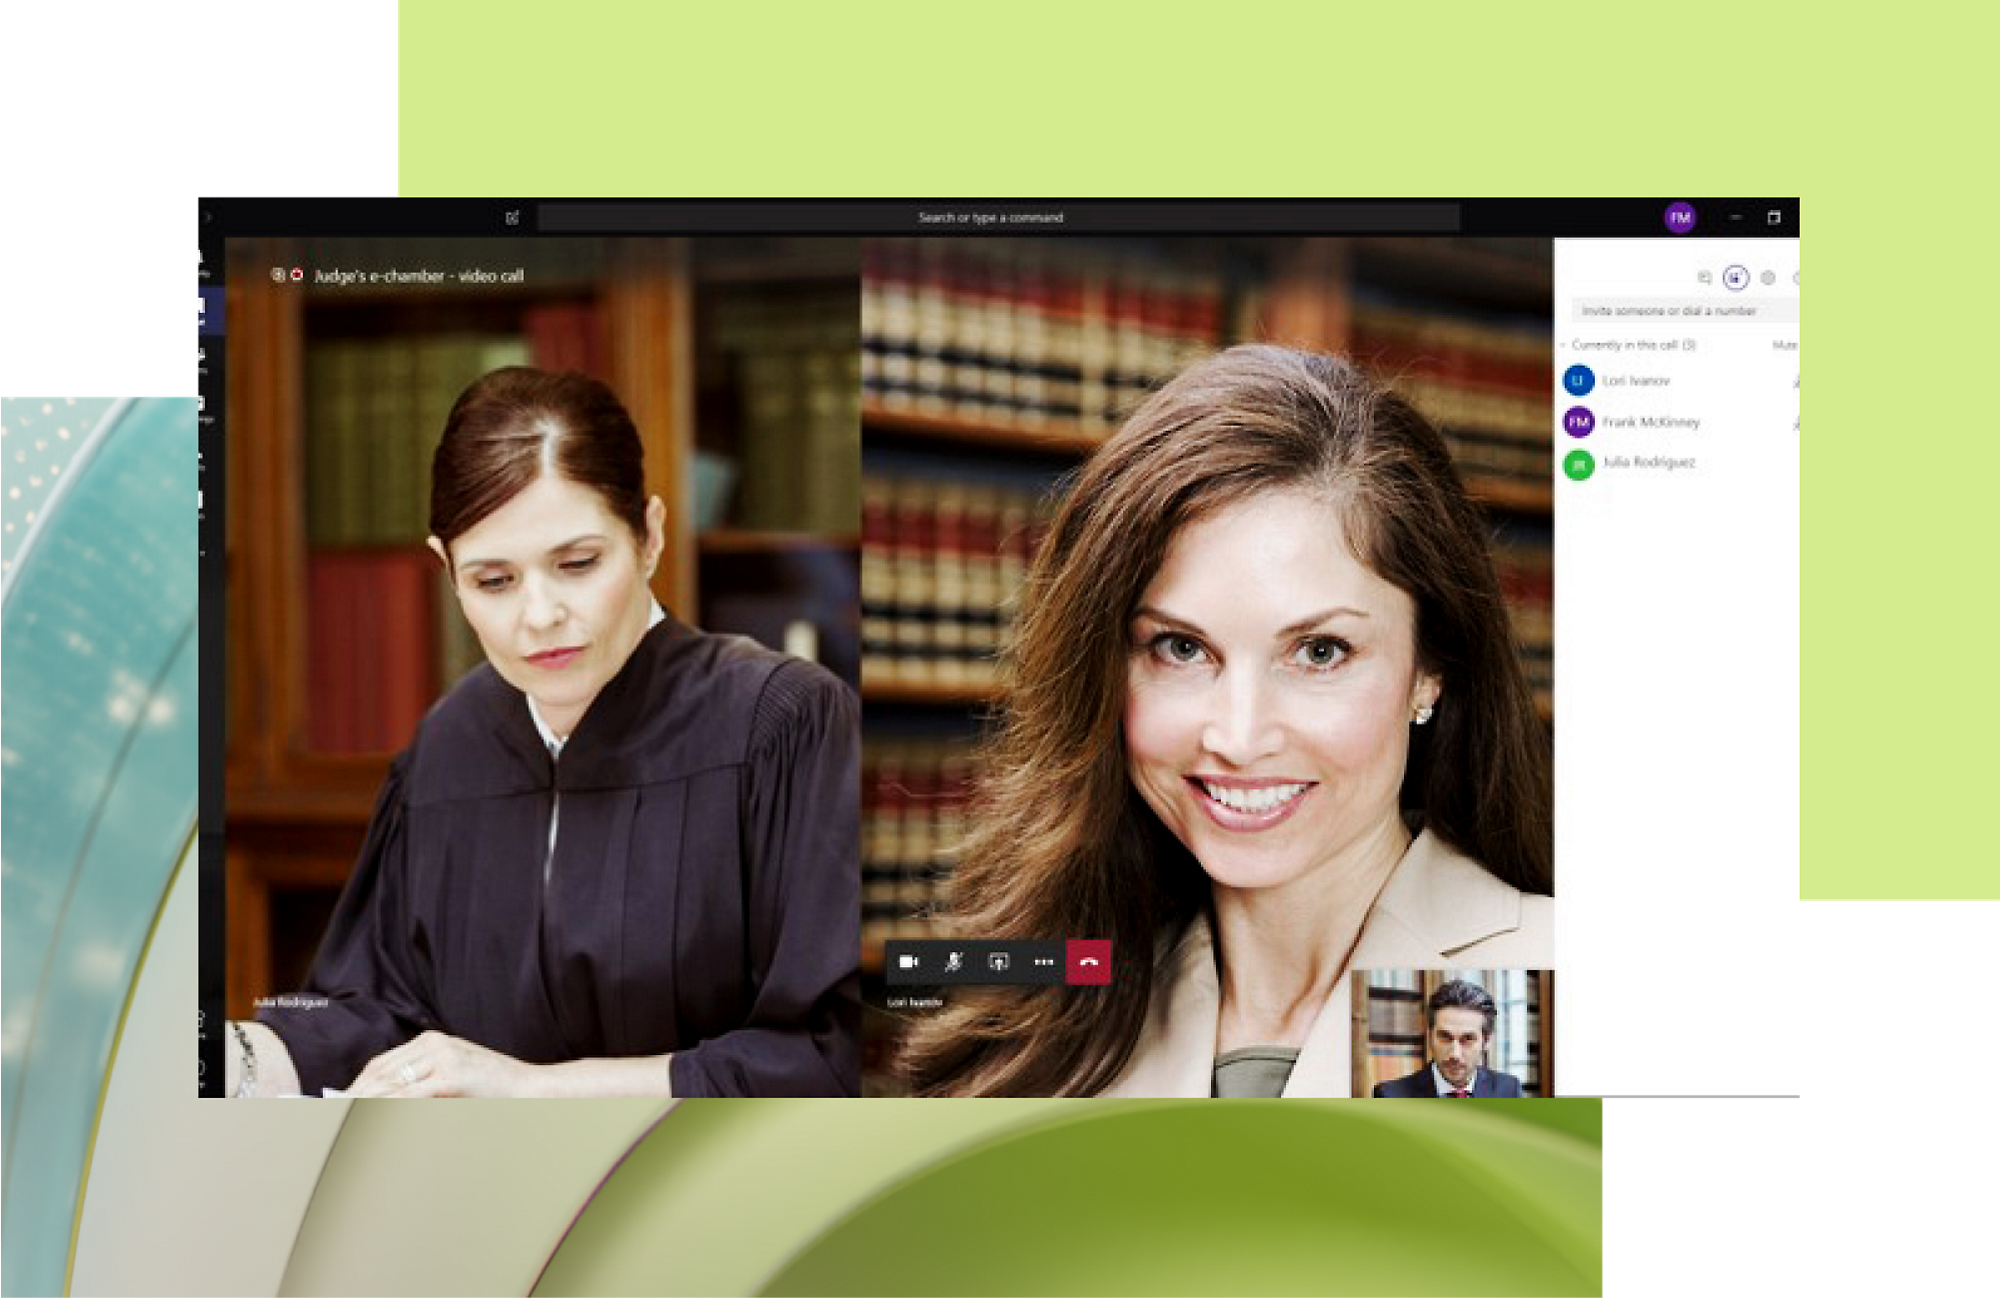 Μια γυναίκα φοράει ρόμπα δικαστή και κοιτάζει ένα έγγραφο, επικαλυμμένο με ένα περιβάλλον εργασίας κλήσης βίντεο το οποίο δείχνει μια χαμογελαστή γυναίκα και έναν άνδρα 